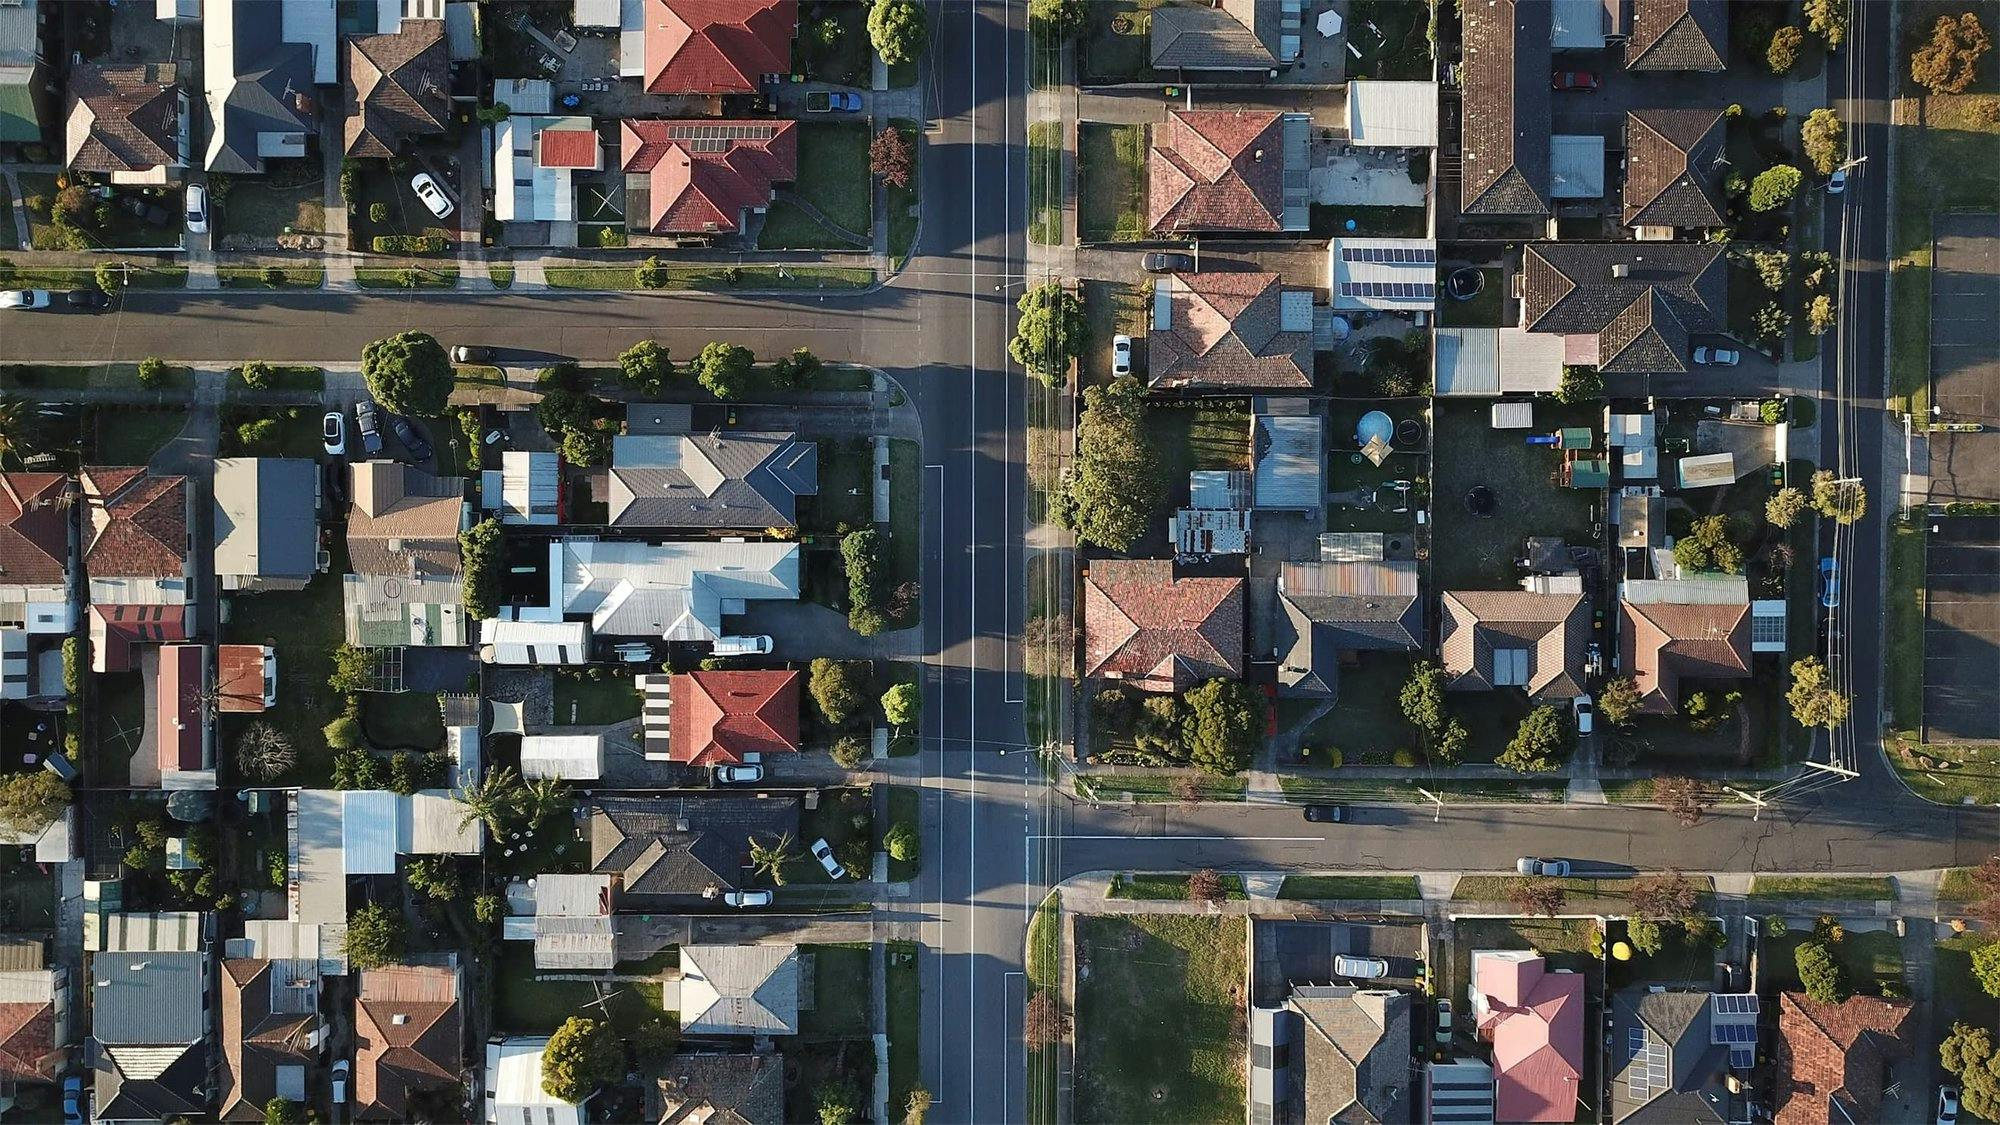 Straßenblock mit Einfamilienhäusern aus der Vorgelperspektive